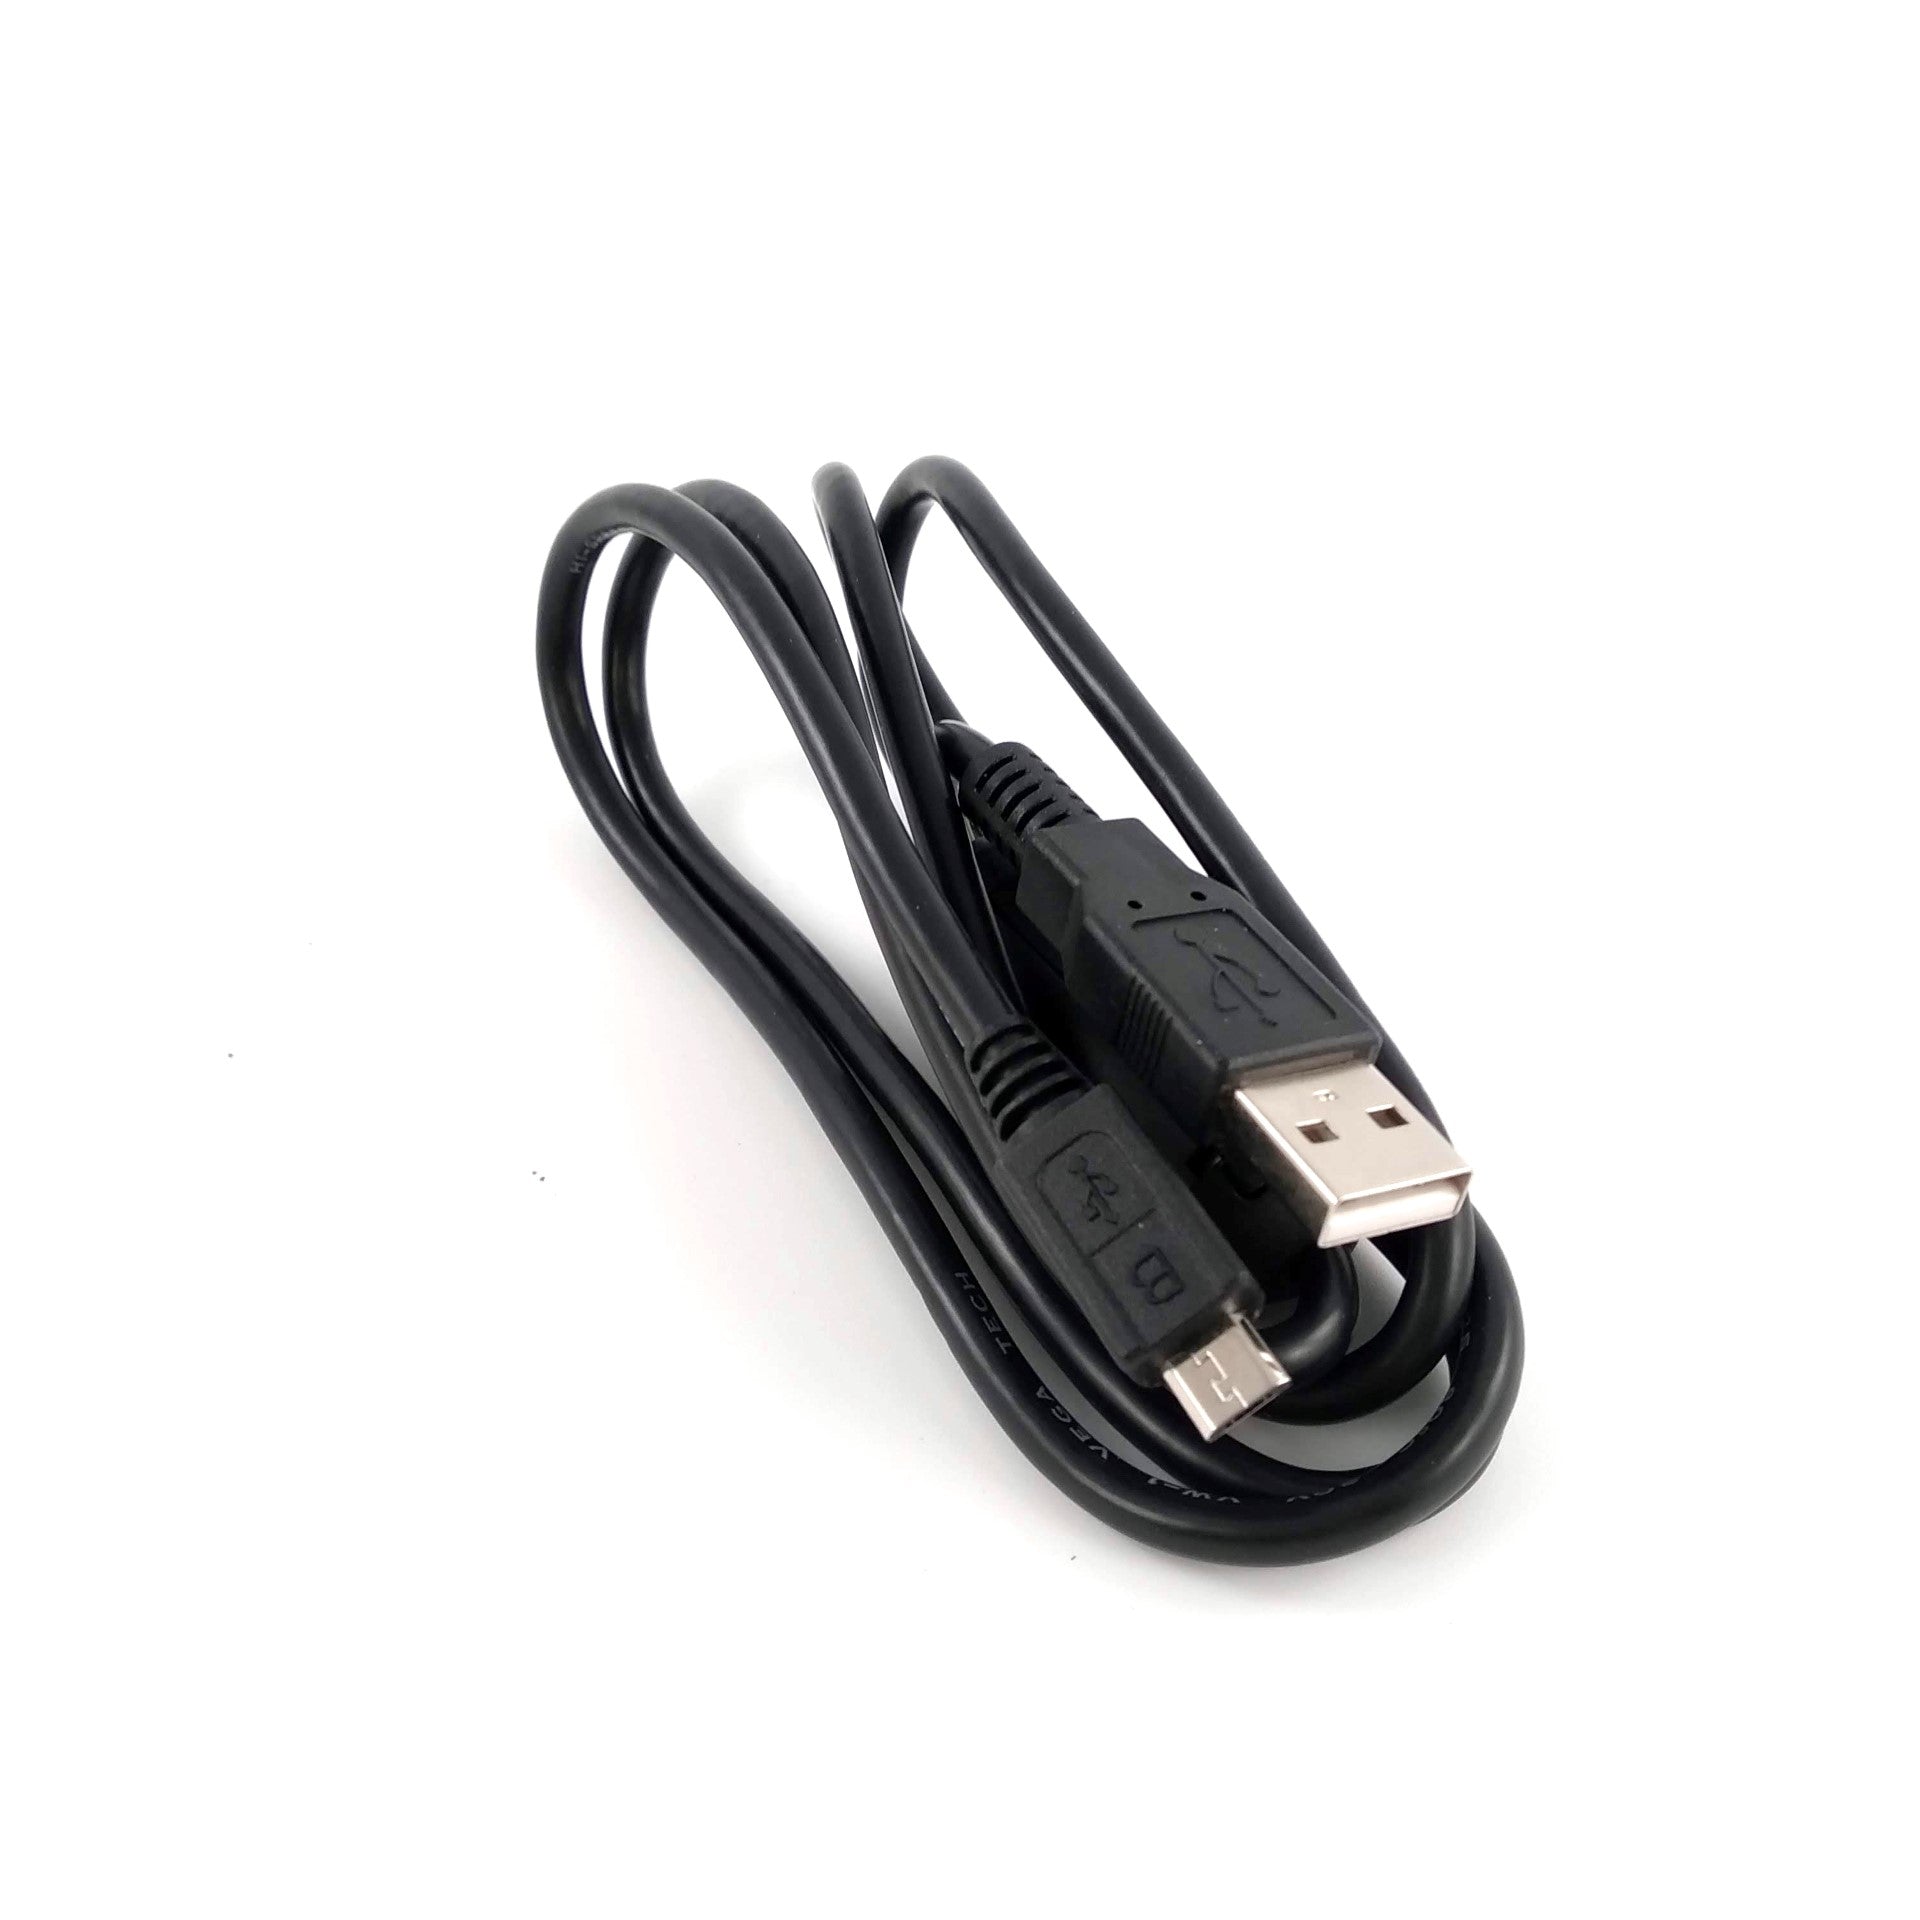 Cable USB exterior IRIDIUM GO